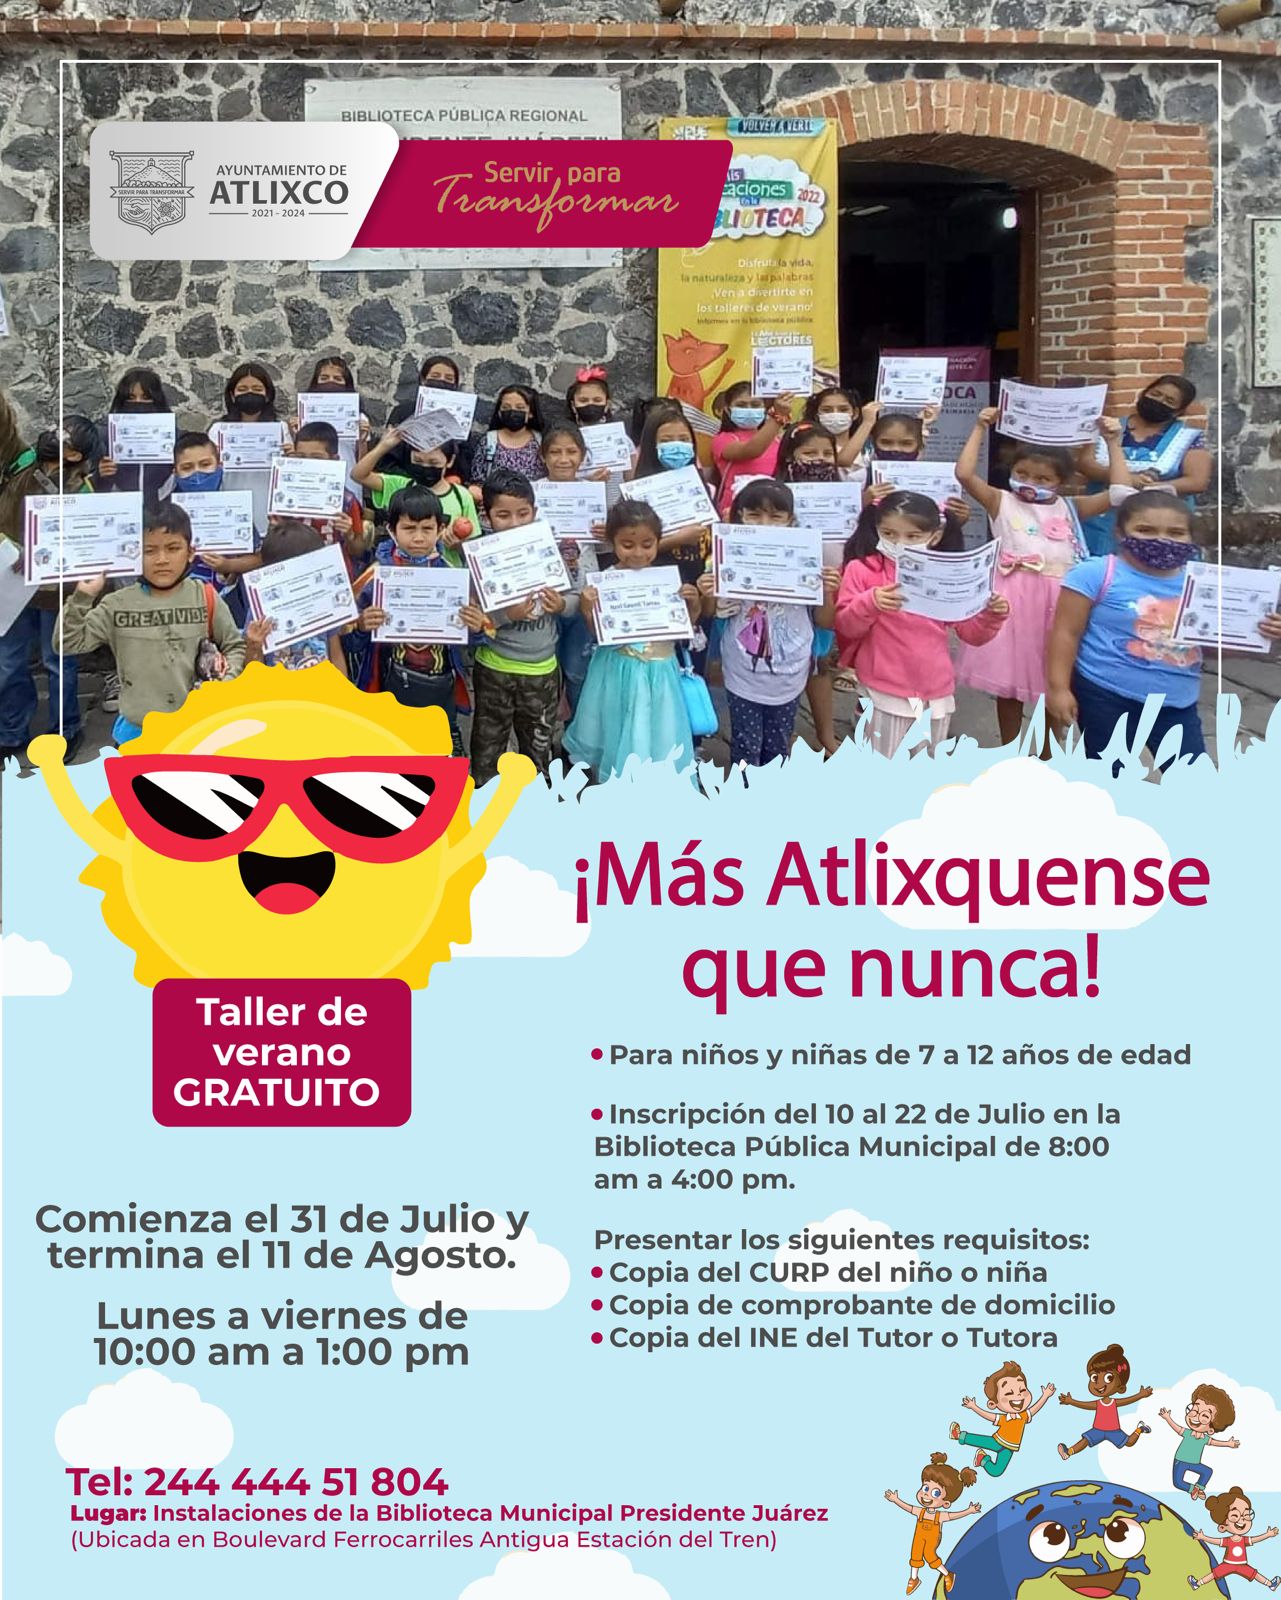 Ayuntamiento de Atlixco invita a su taller gratuito de verano